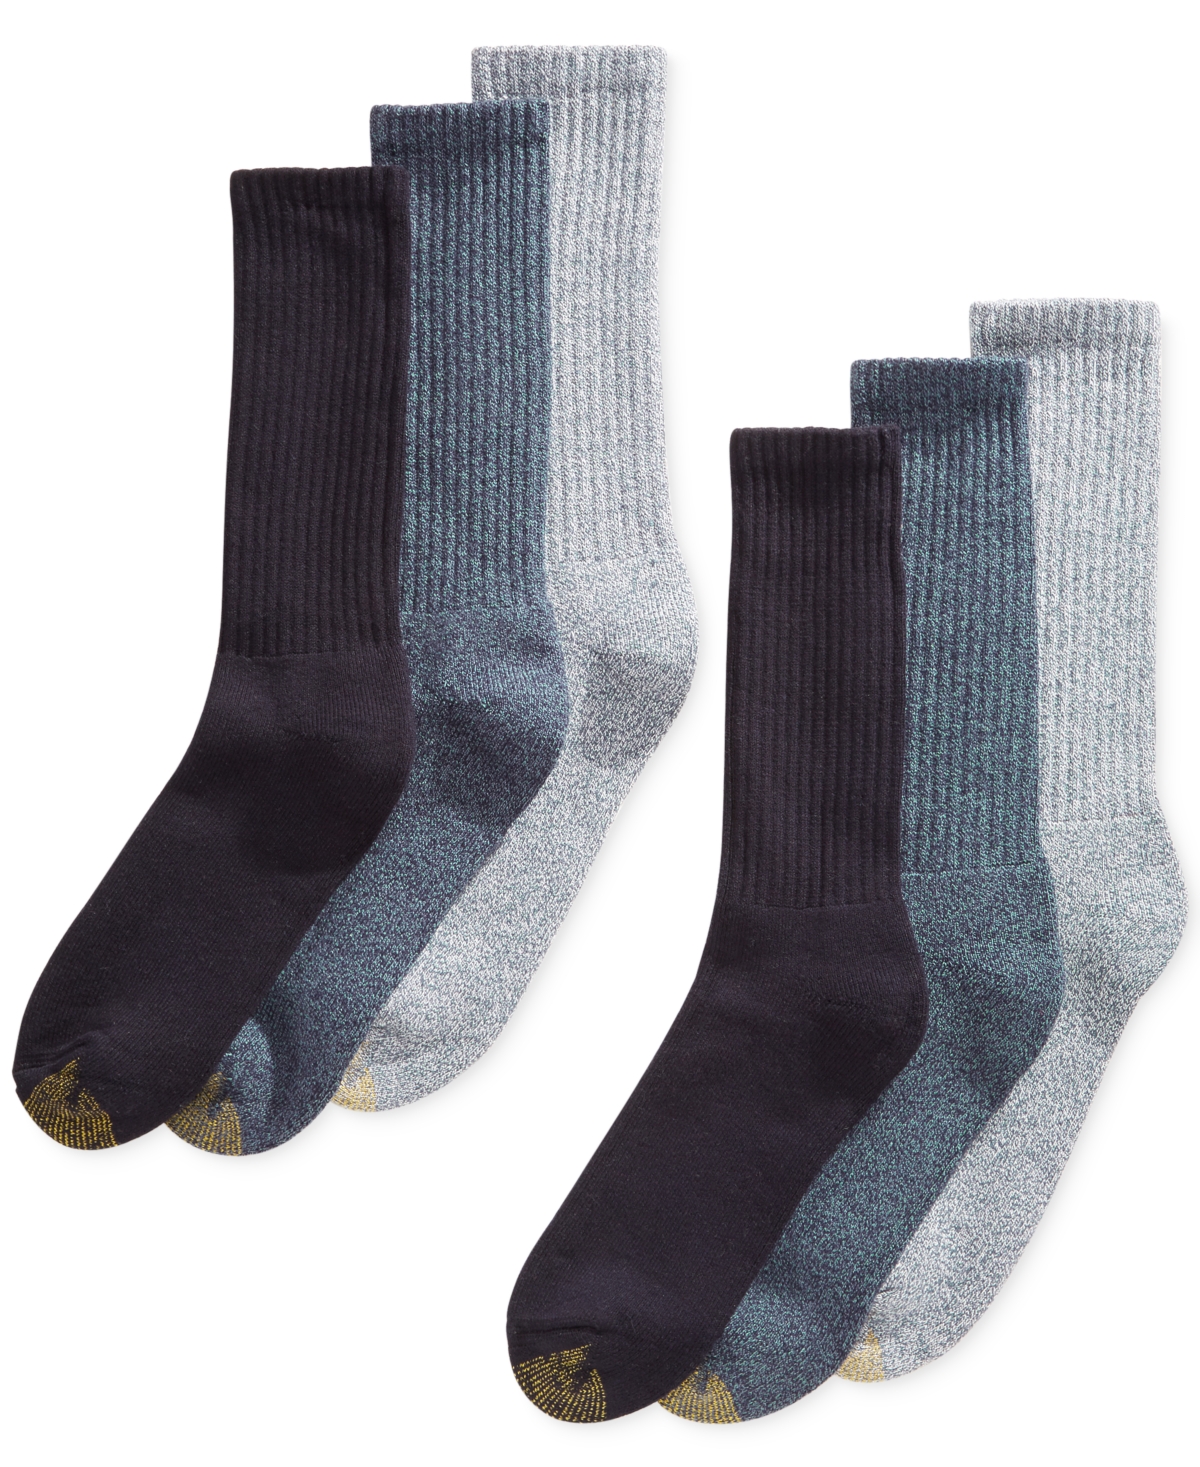 Men's 6-Pk. Harrington Extended Socks - Grey Asst.